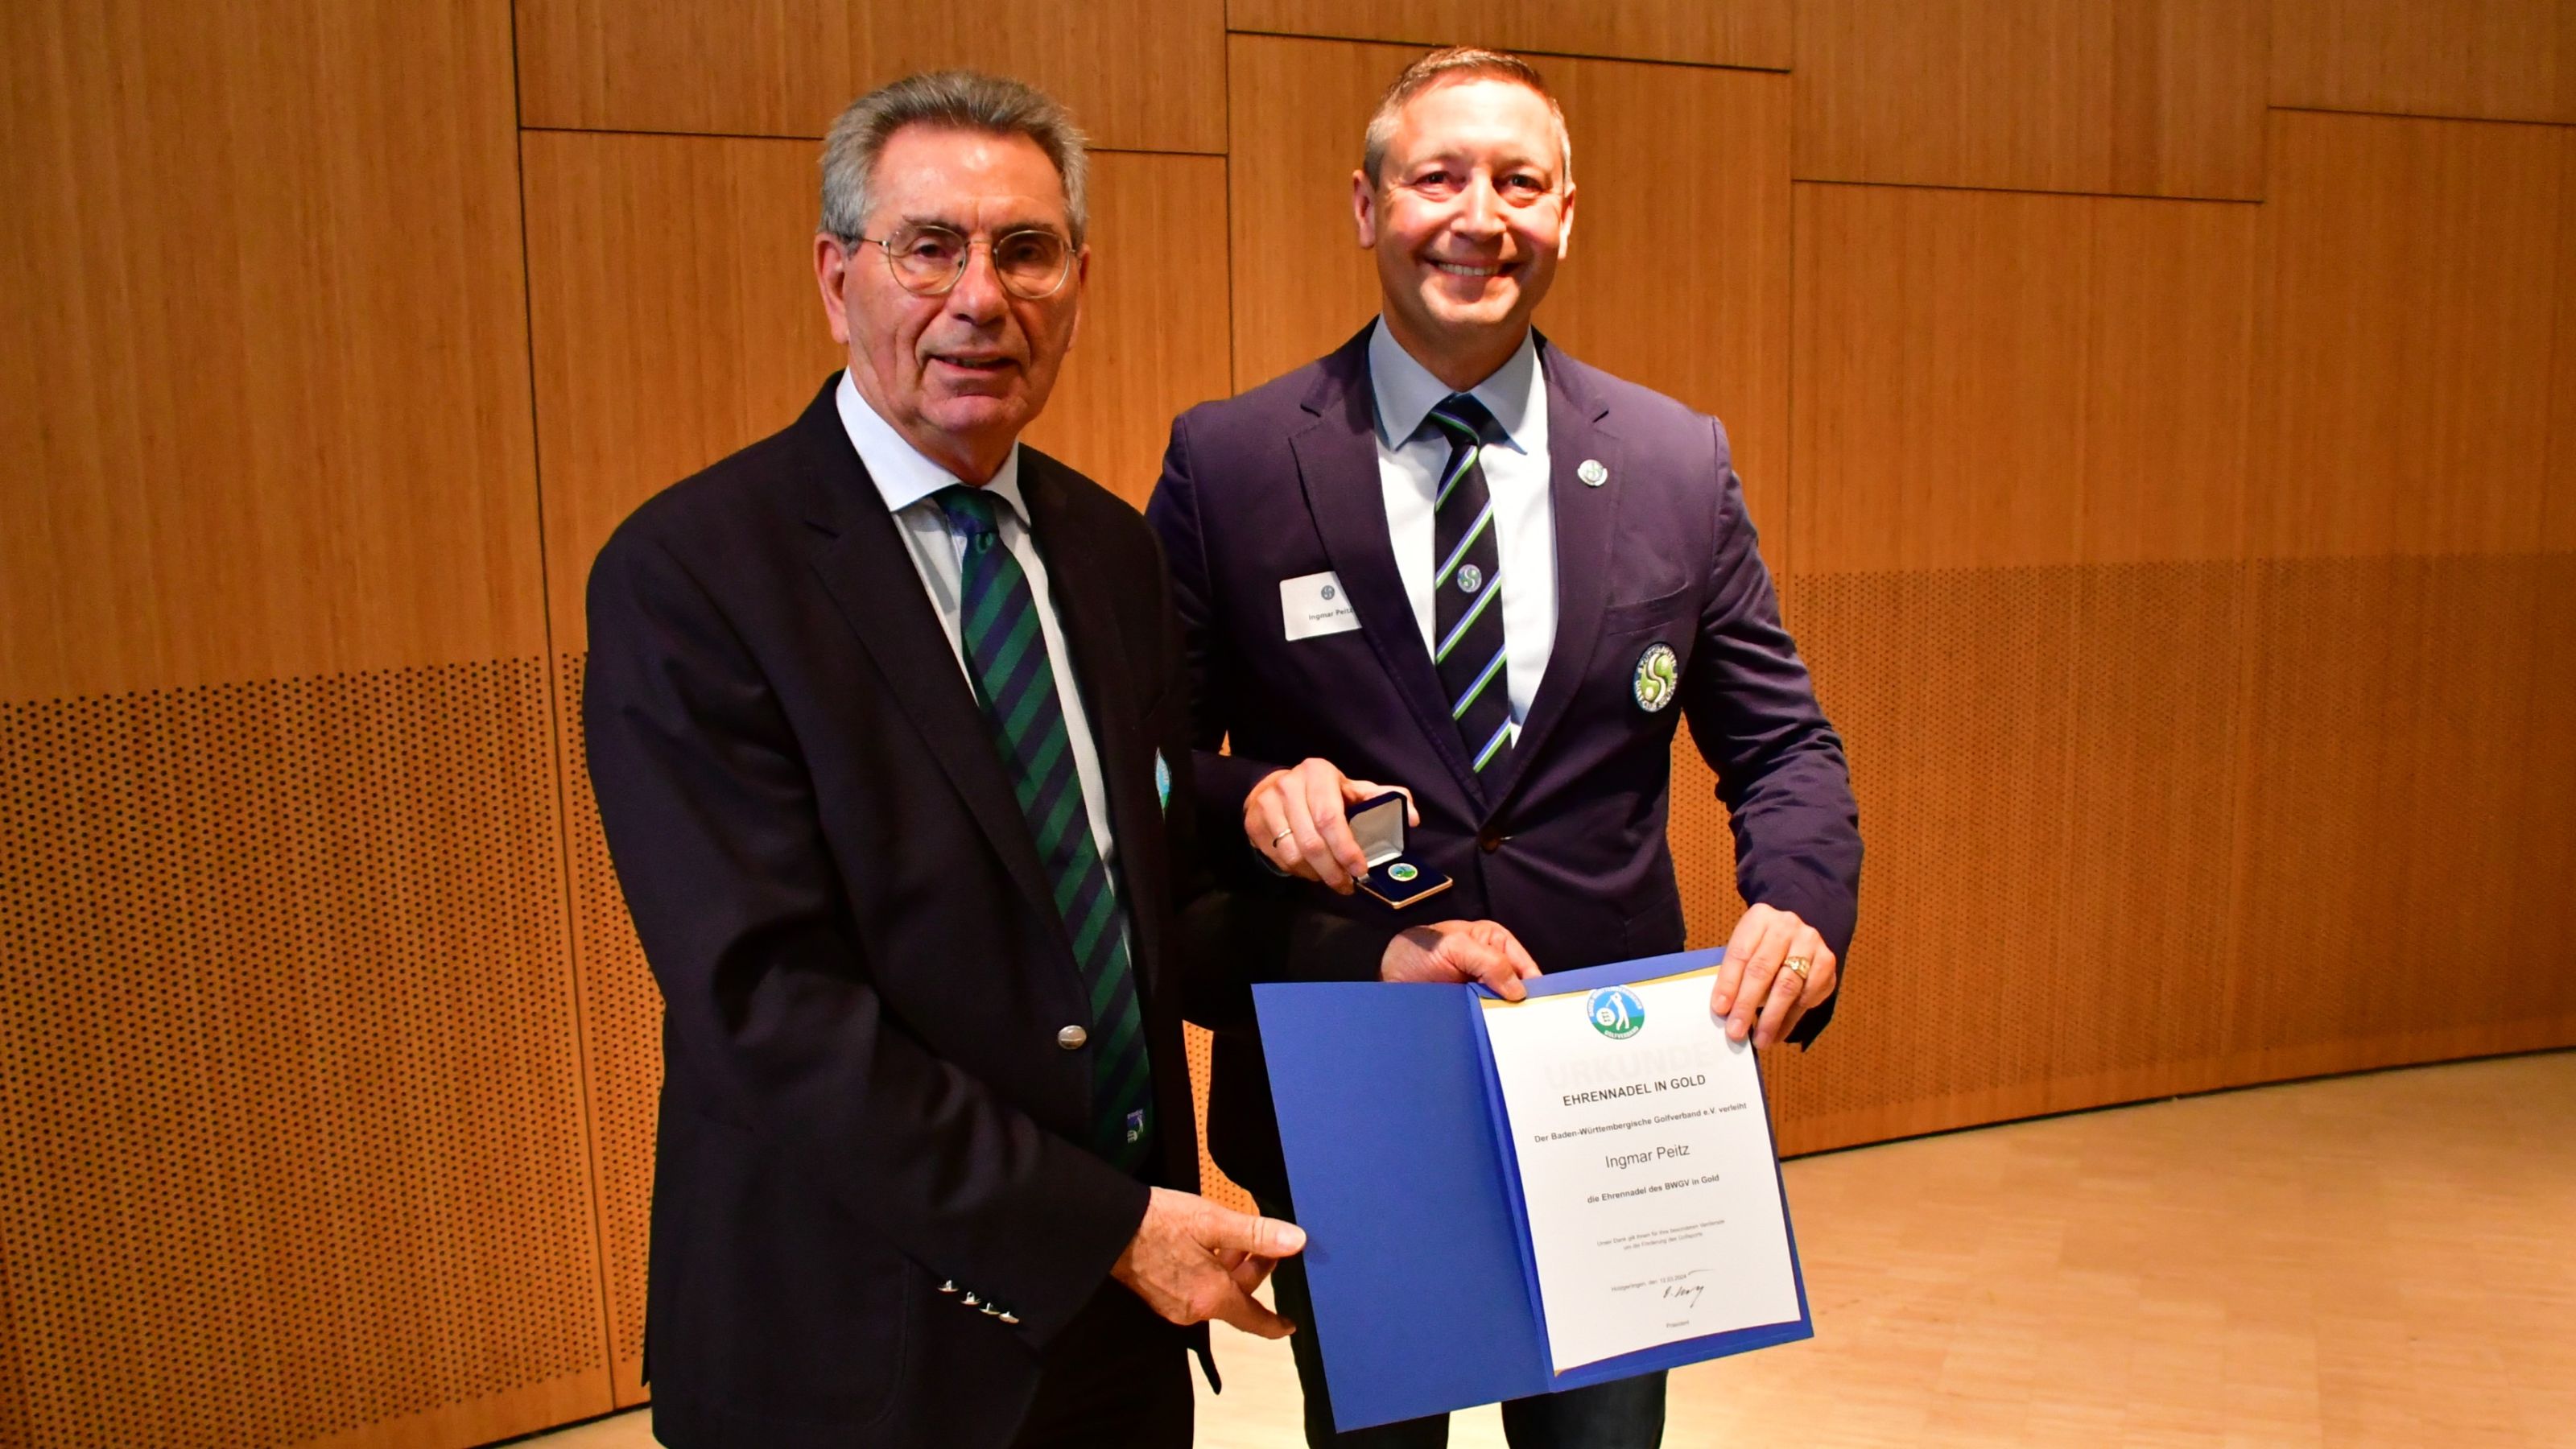 Ingmar Peitz erhielt die Goldene Ehrennadel des Baden-Württembergischen Golfverbands aus den Händen von Präsident Otto Leibfritz. © Privat